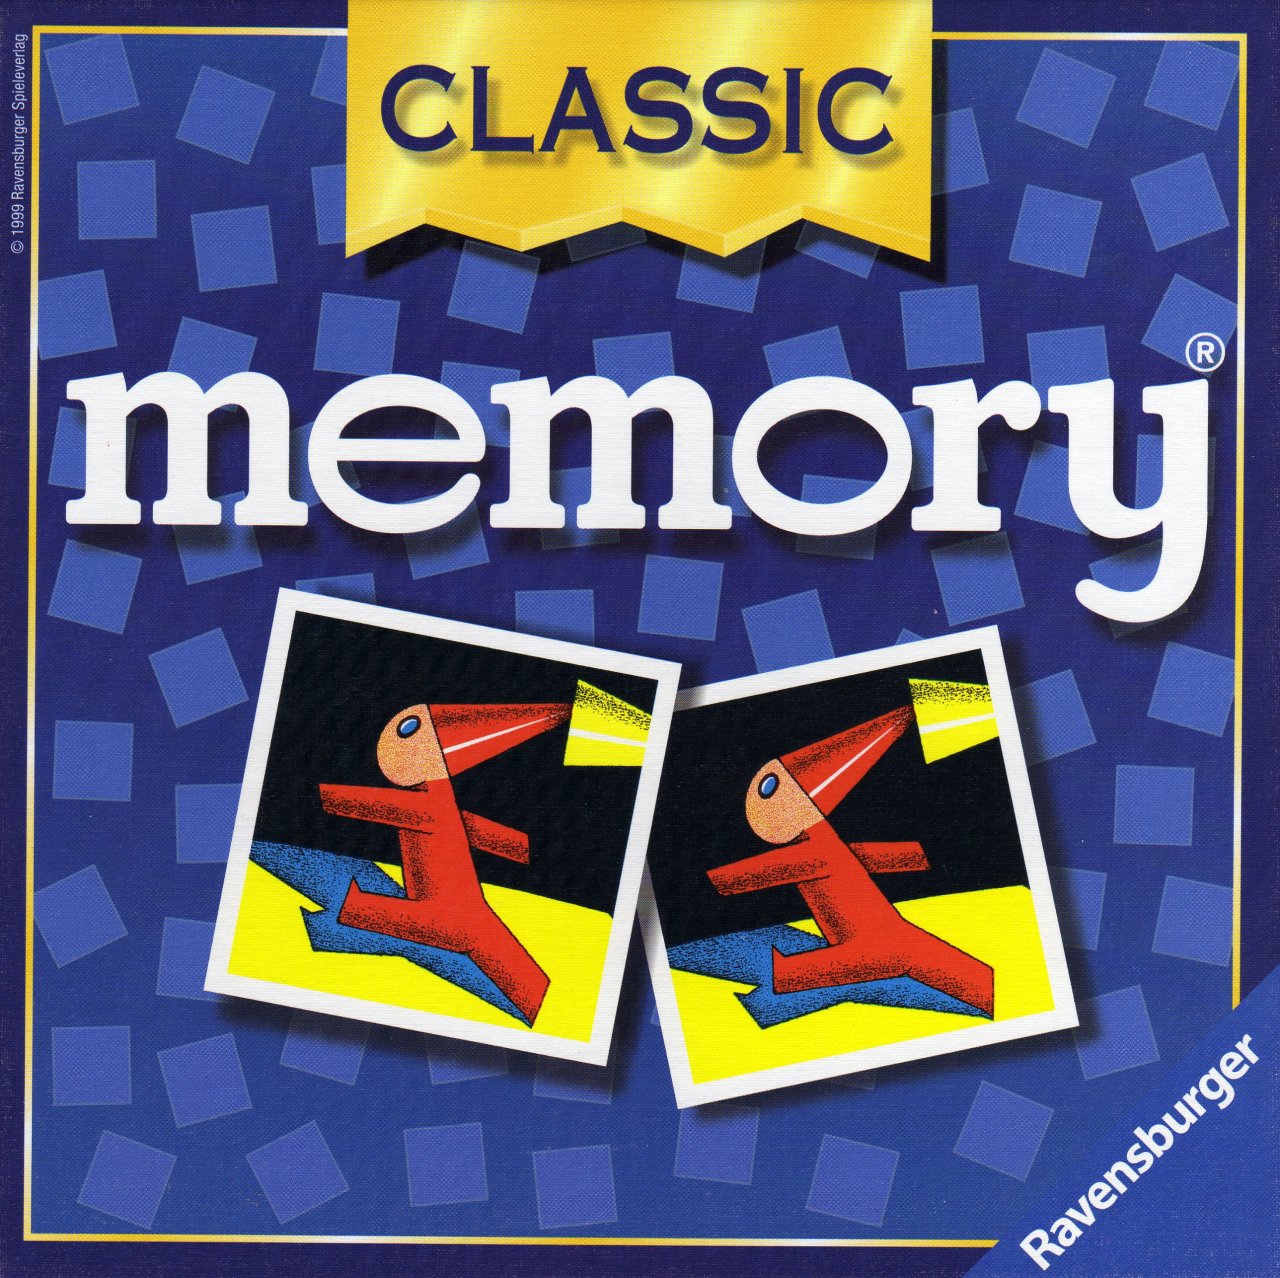 Dabbl Diddl - Memo (memory) - LastDodo